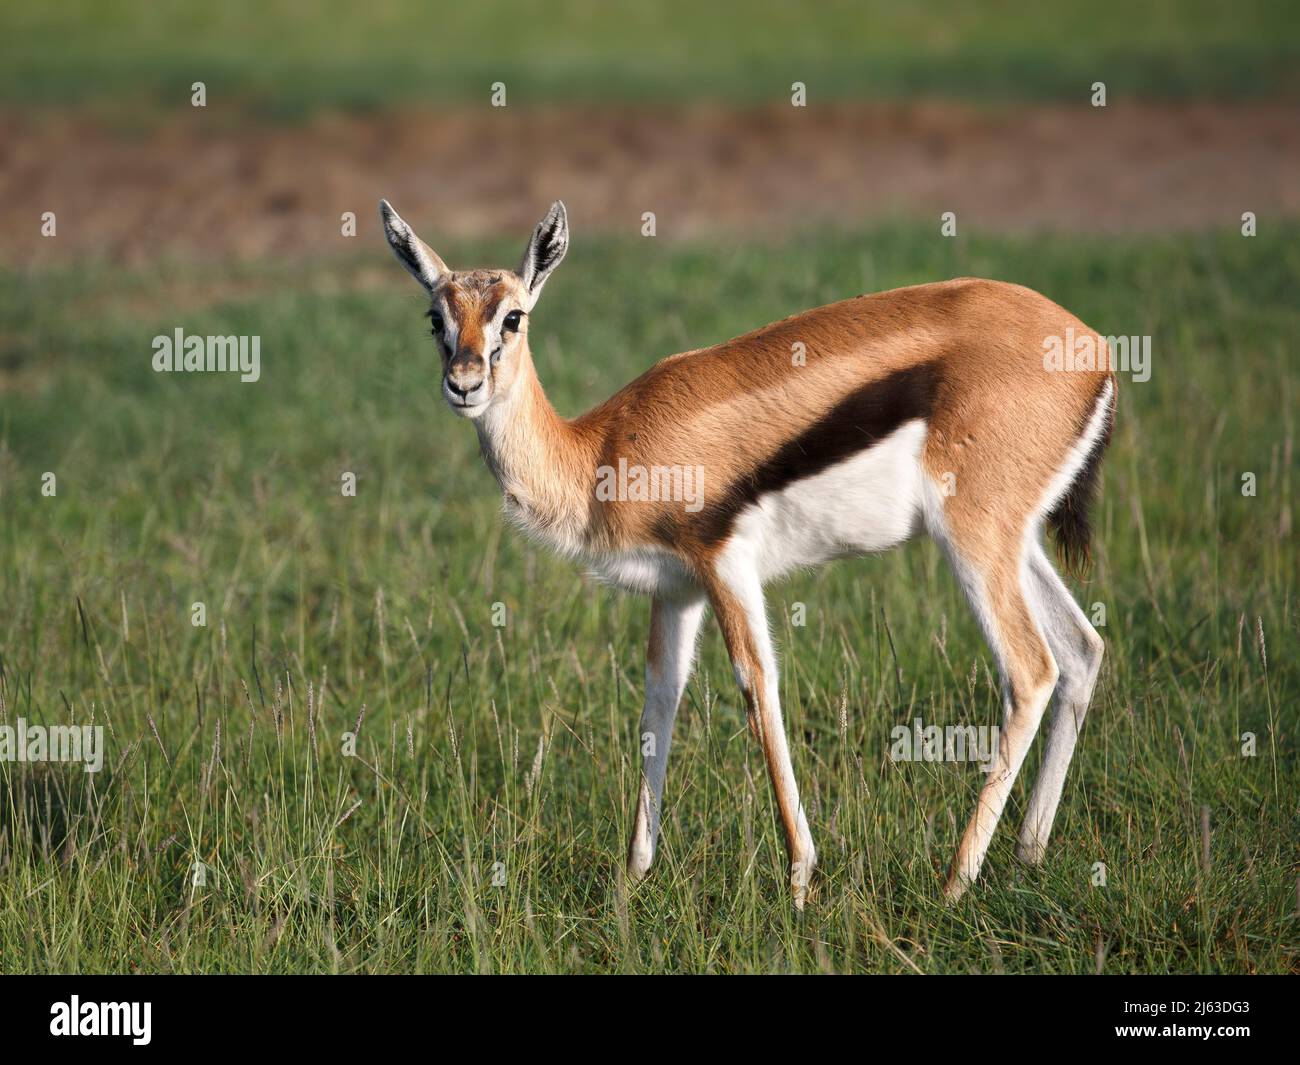 Female Thomson's gazelle (Eudorcas thomsonii) in Ngorongoro Crater, Tanzania Stock Photo